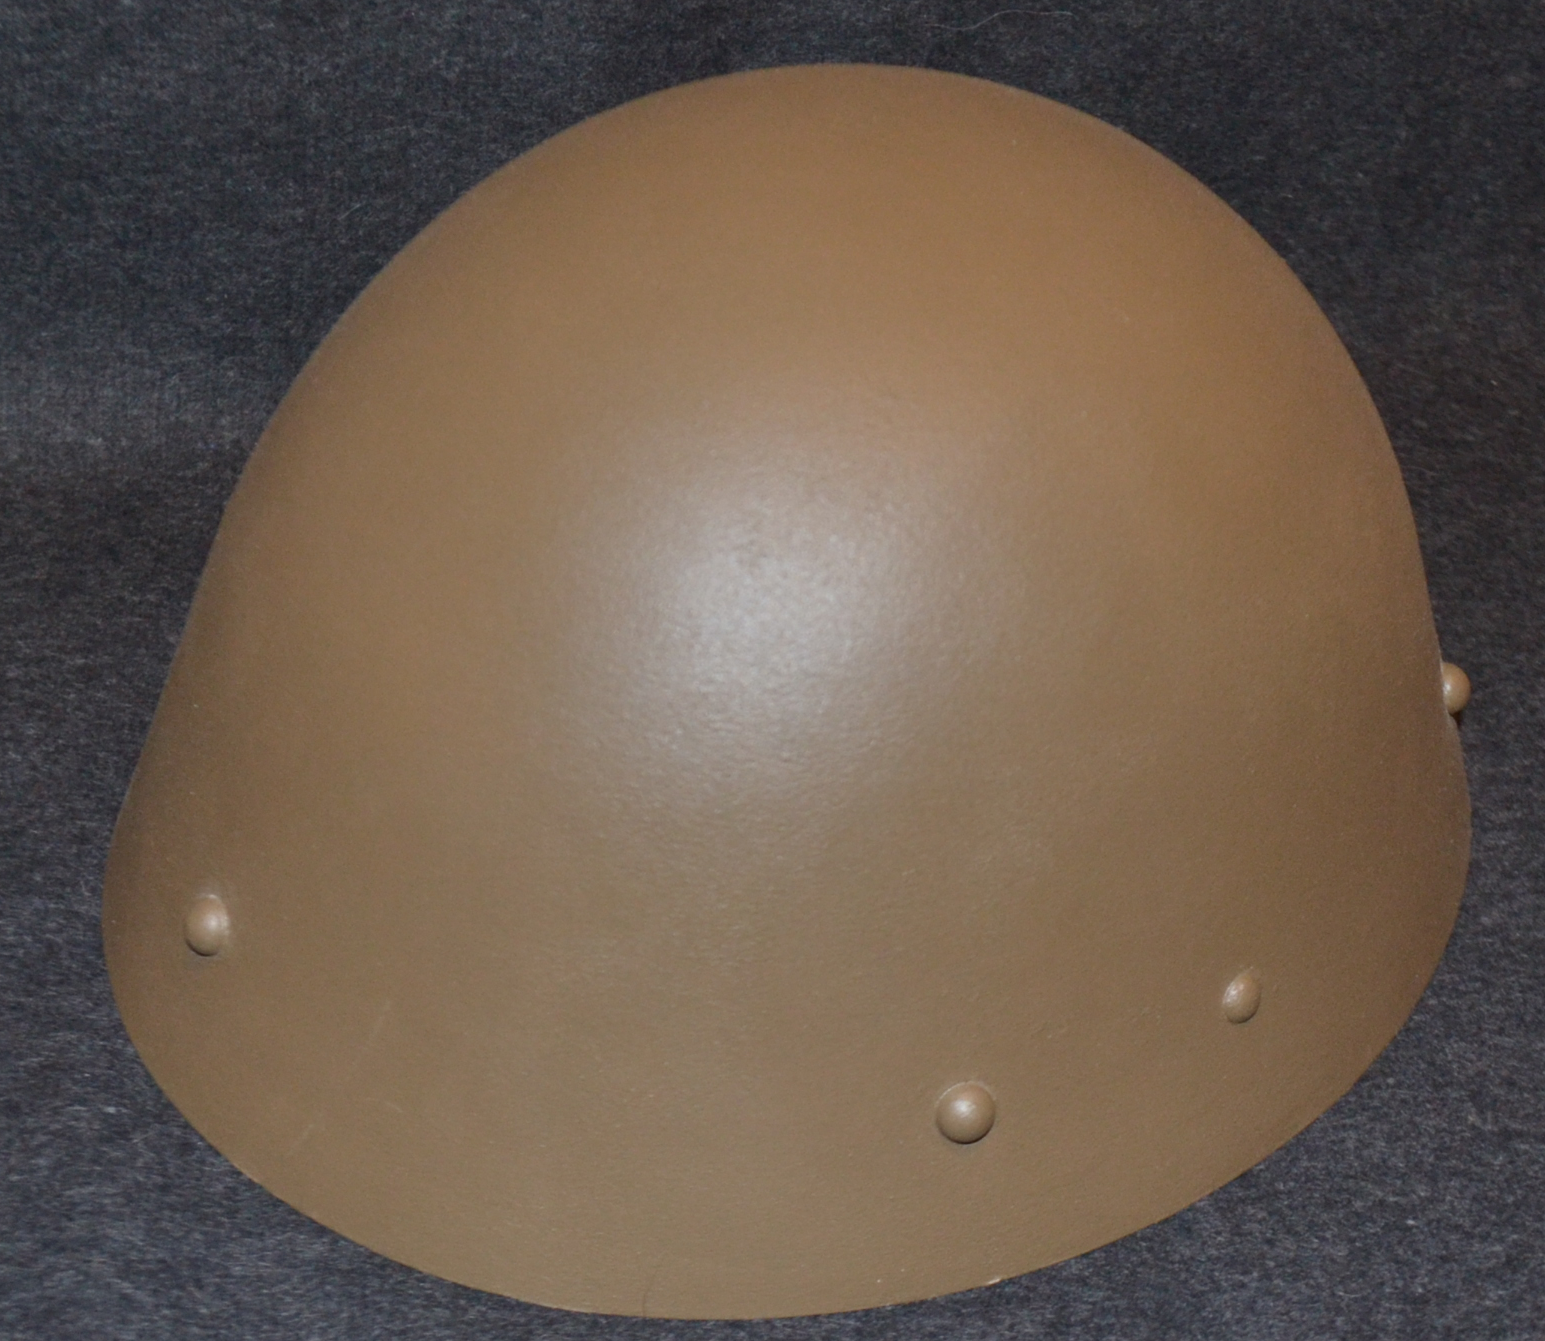 Czechoslovakian M32 helmet - Wikipedia